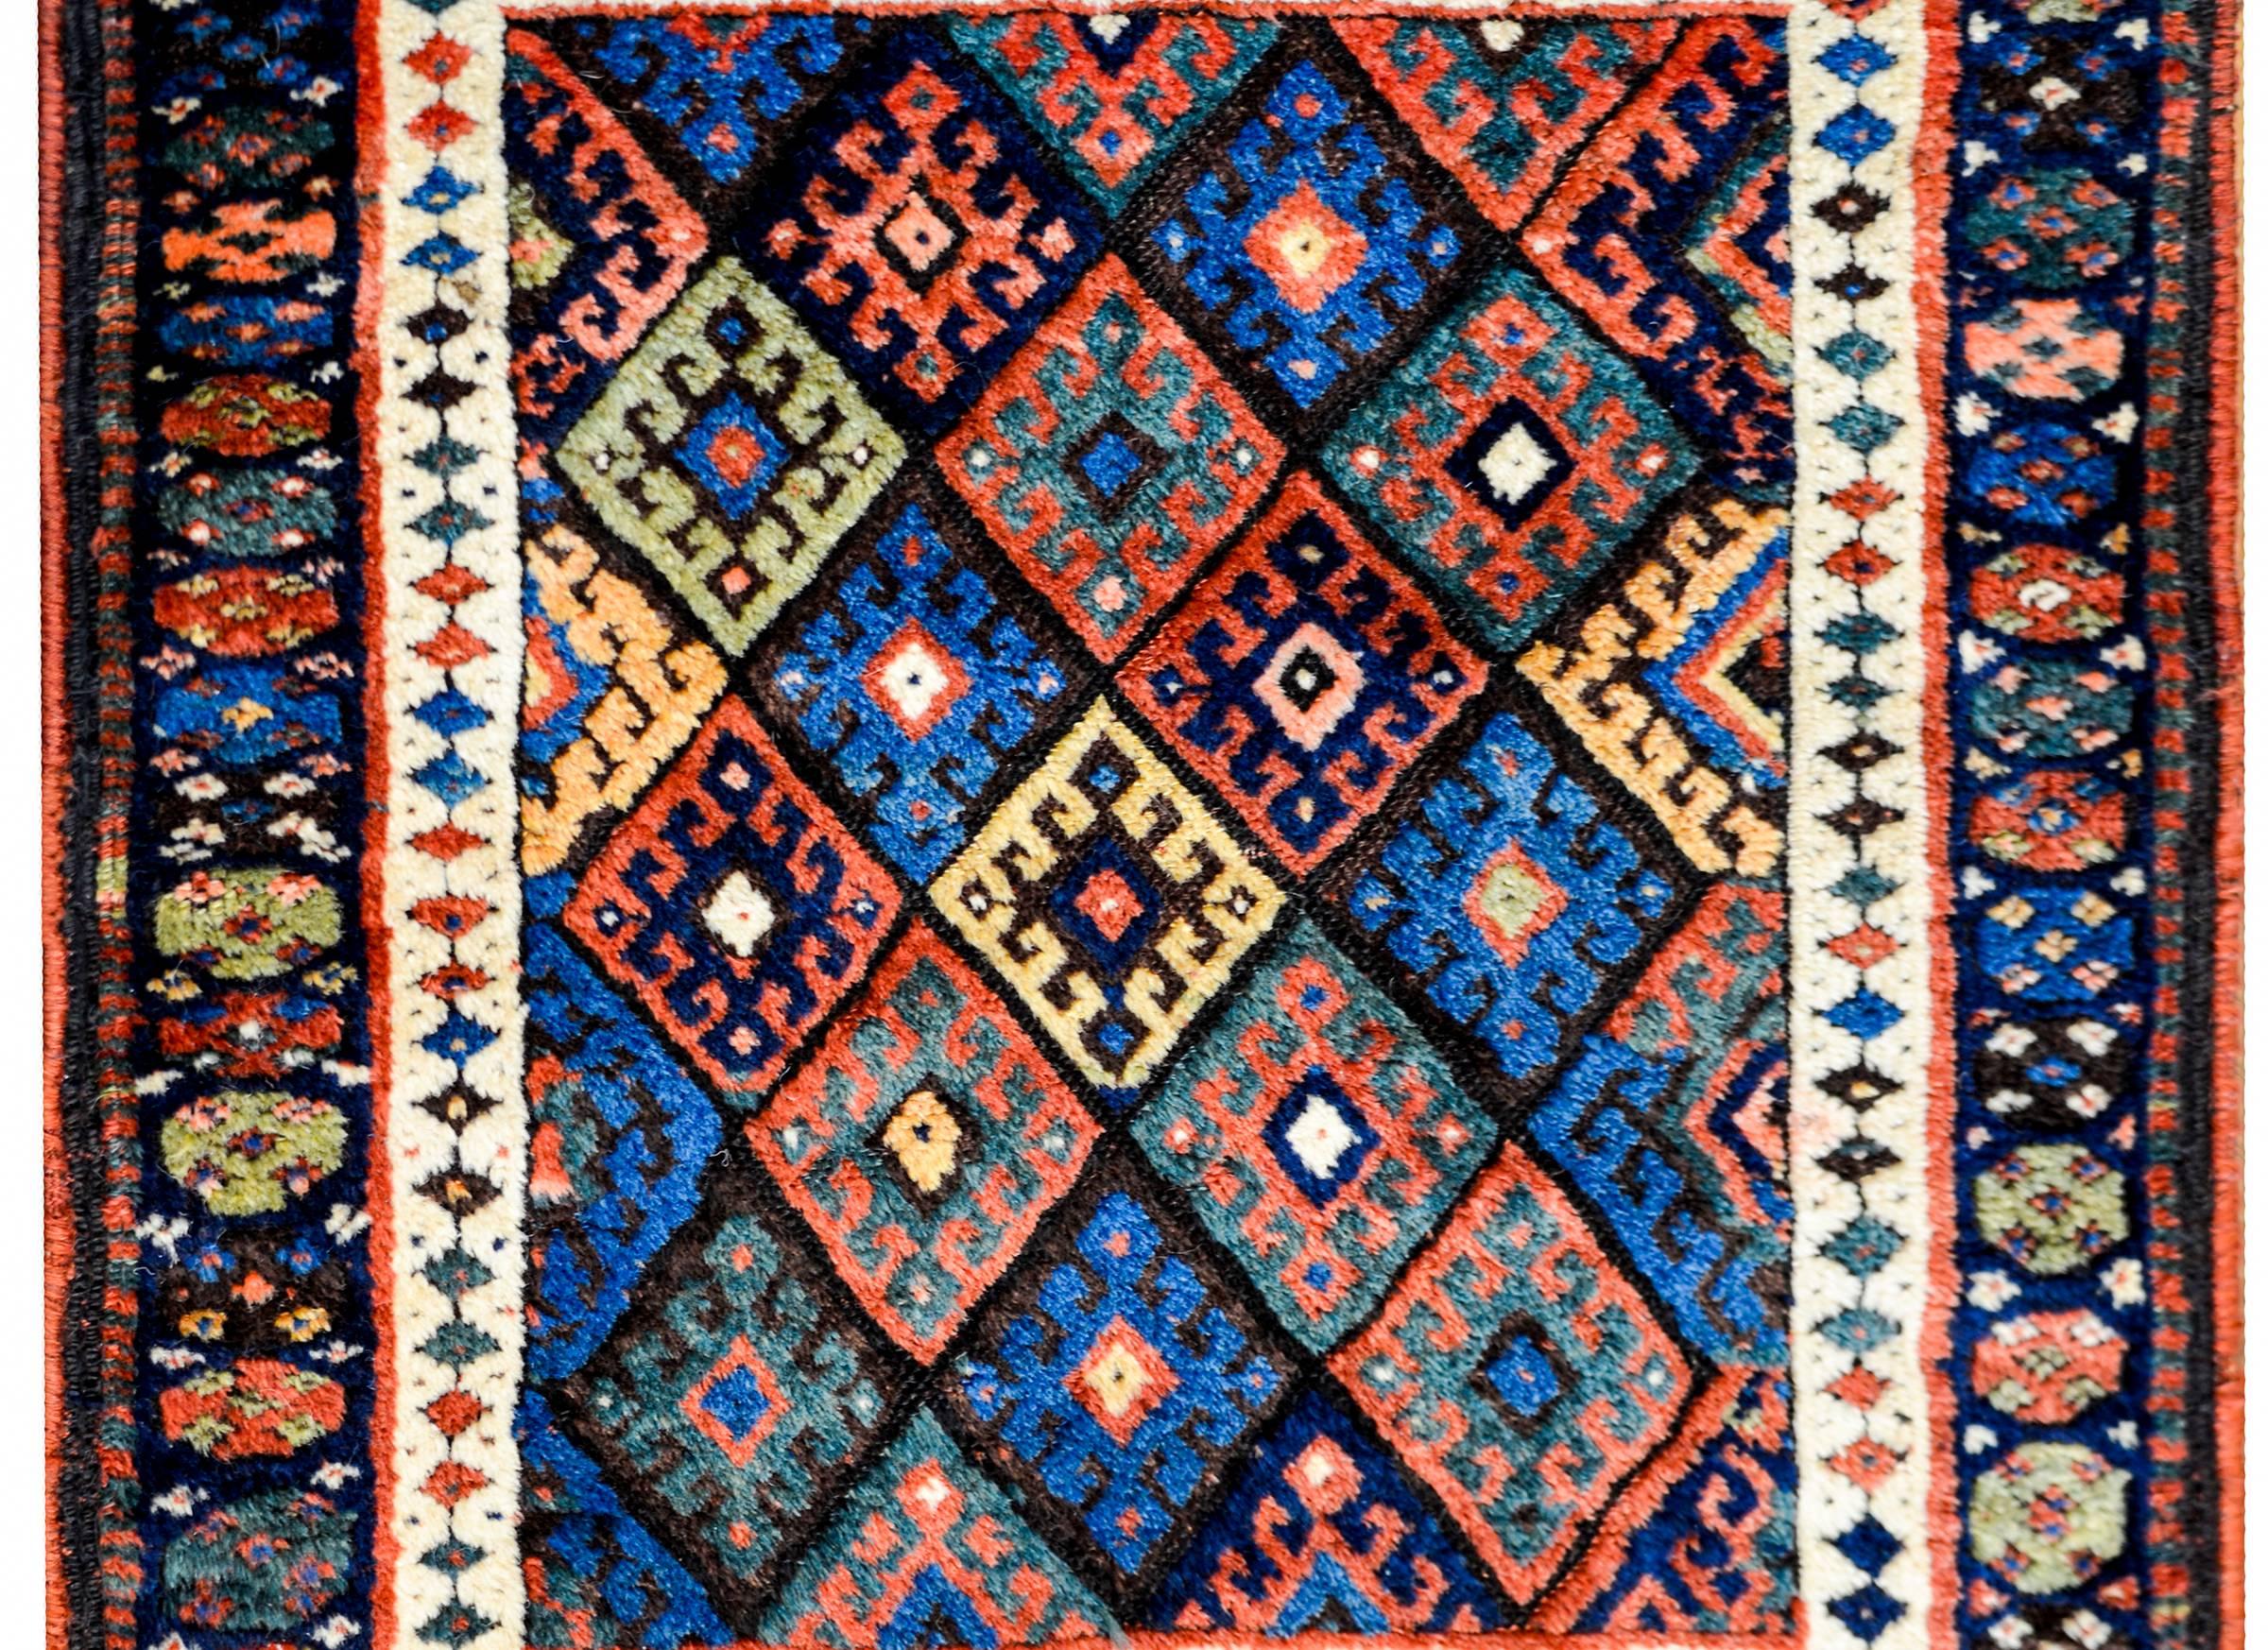 Magnifique tapis kurde Jaff du début du 20e siècle avec un motif complexe contenant de multiples diamants avec des fleurs stylisées tissées en laine de couleur cramoisie, indigo, verte, noire et jaune. La bordure est complexe, avec deux larges